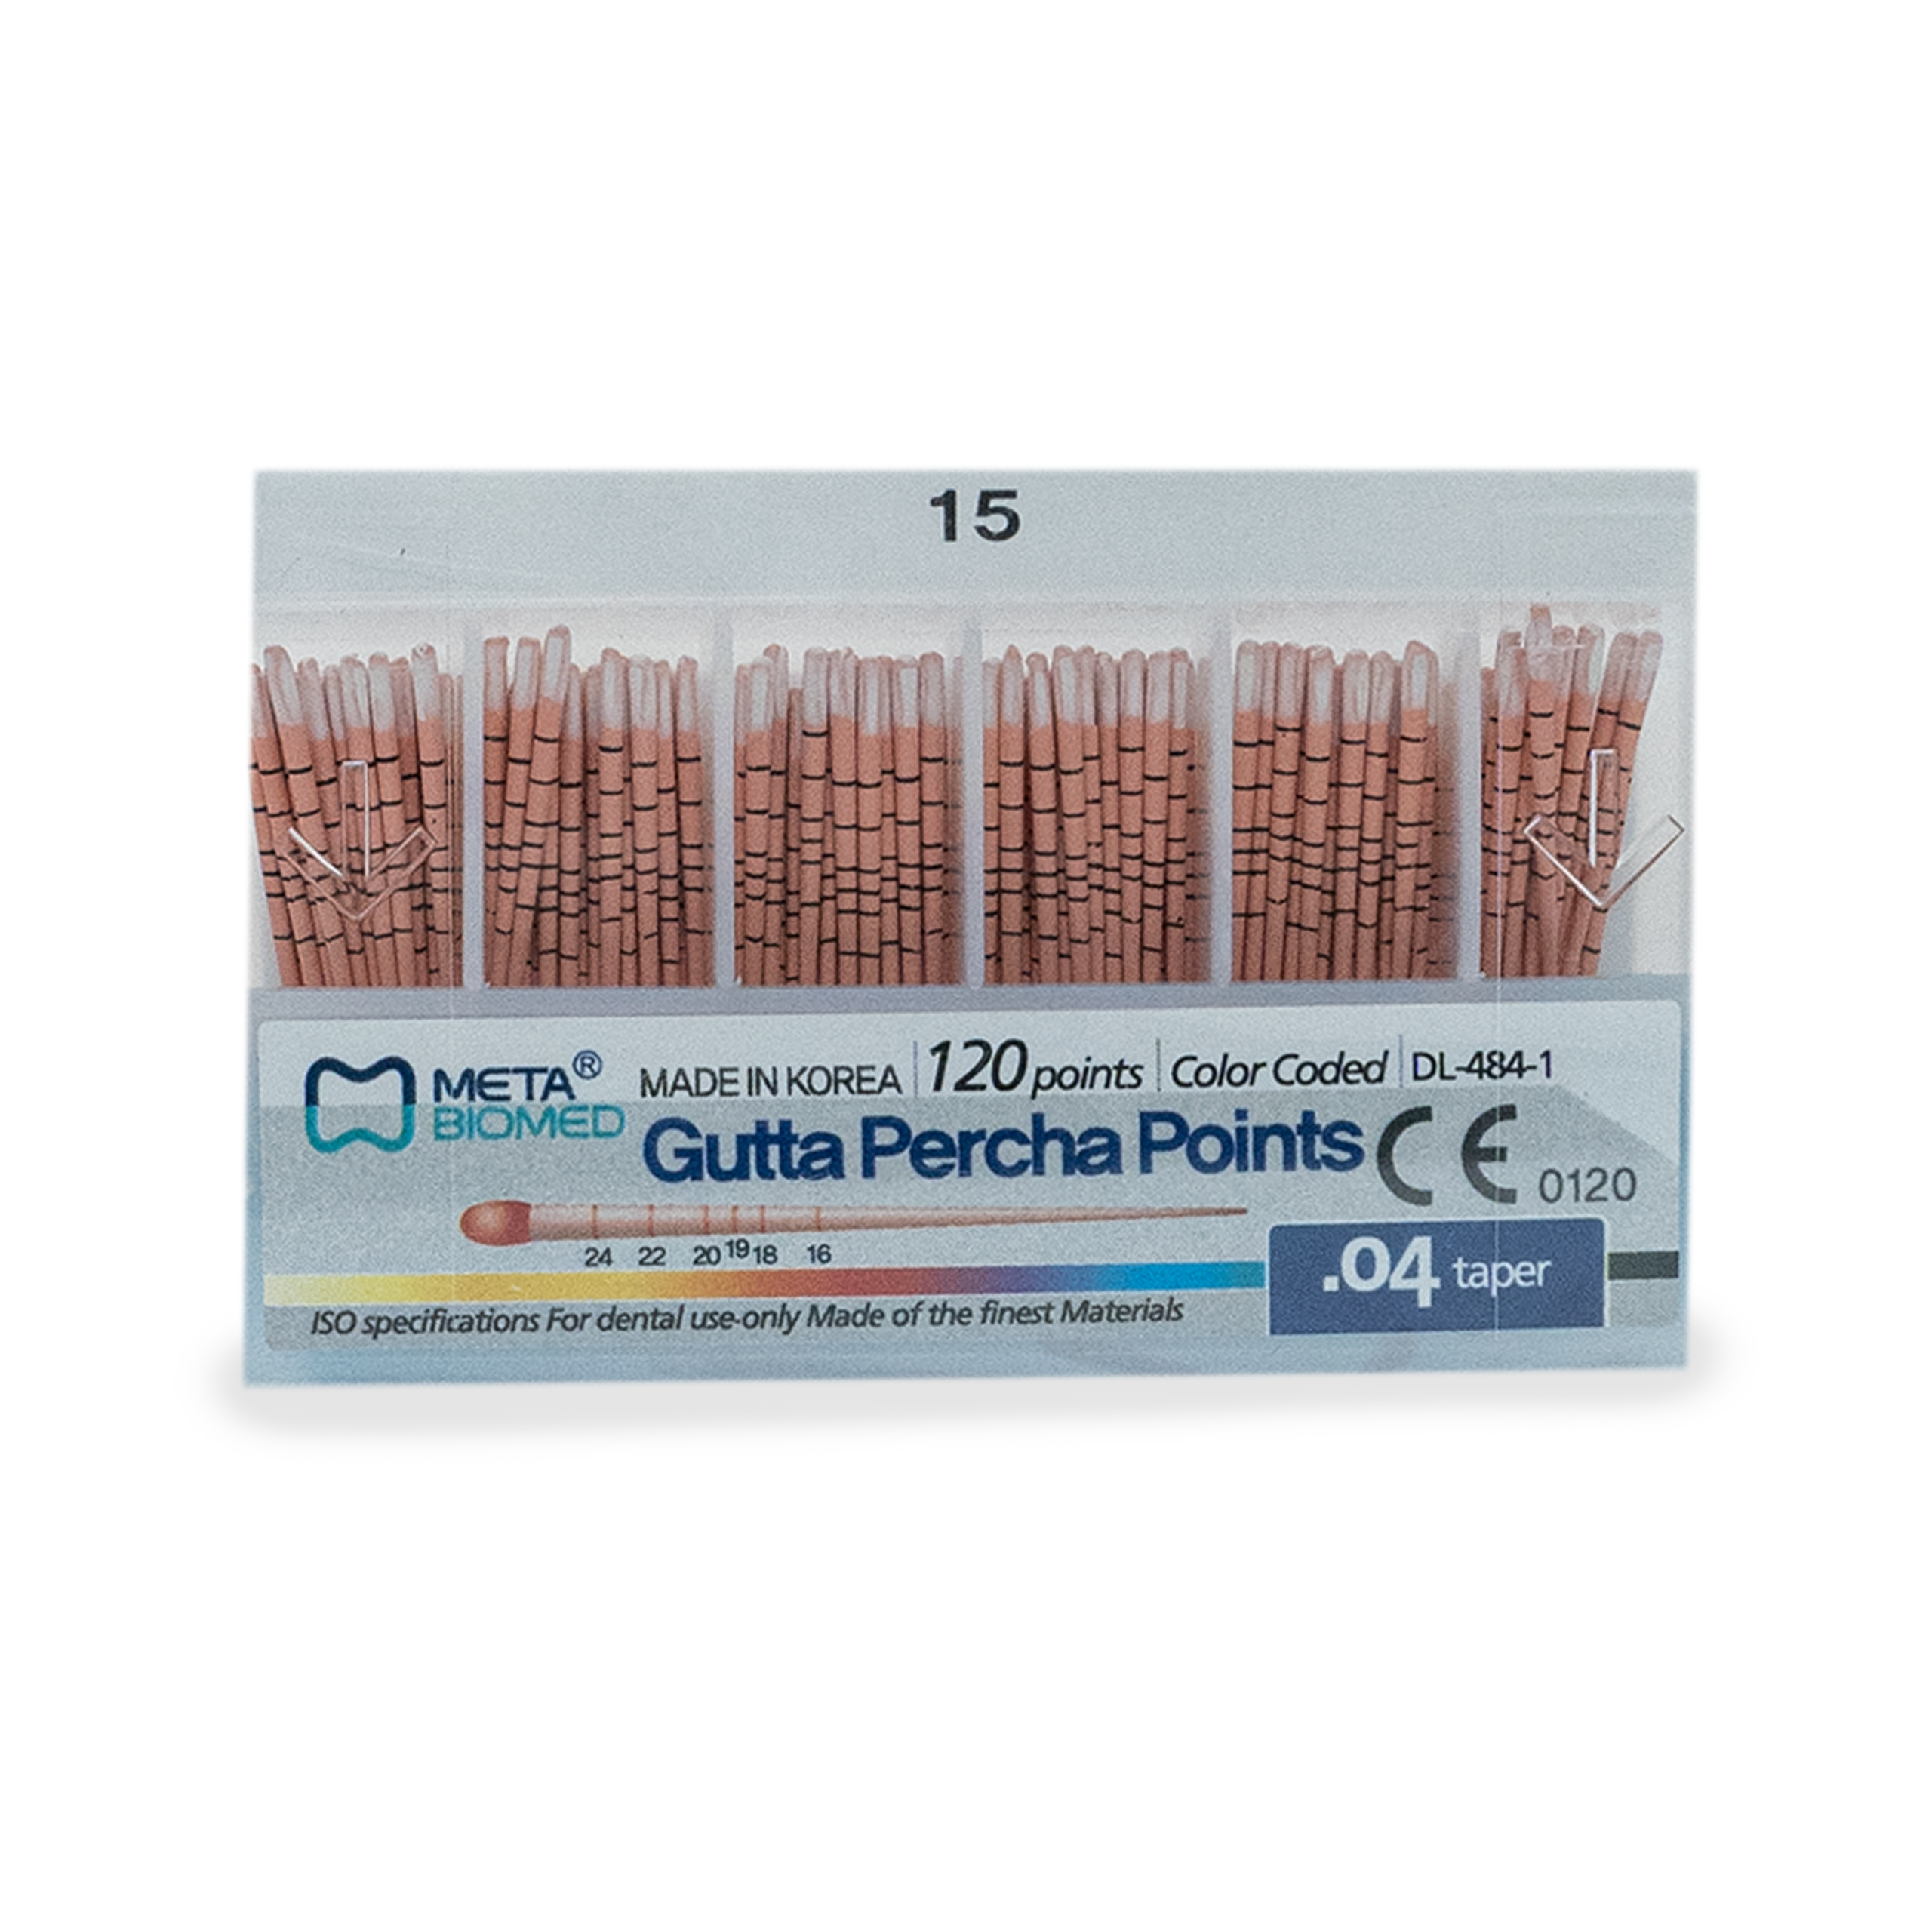 Gutta-Percha points 15 (0.4 taper)